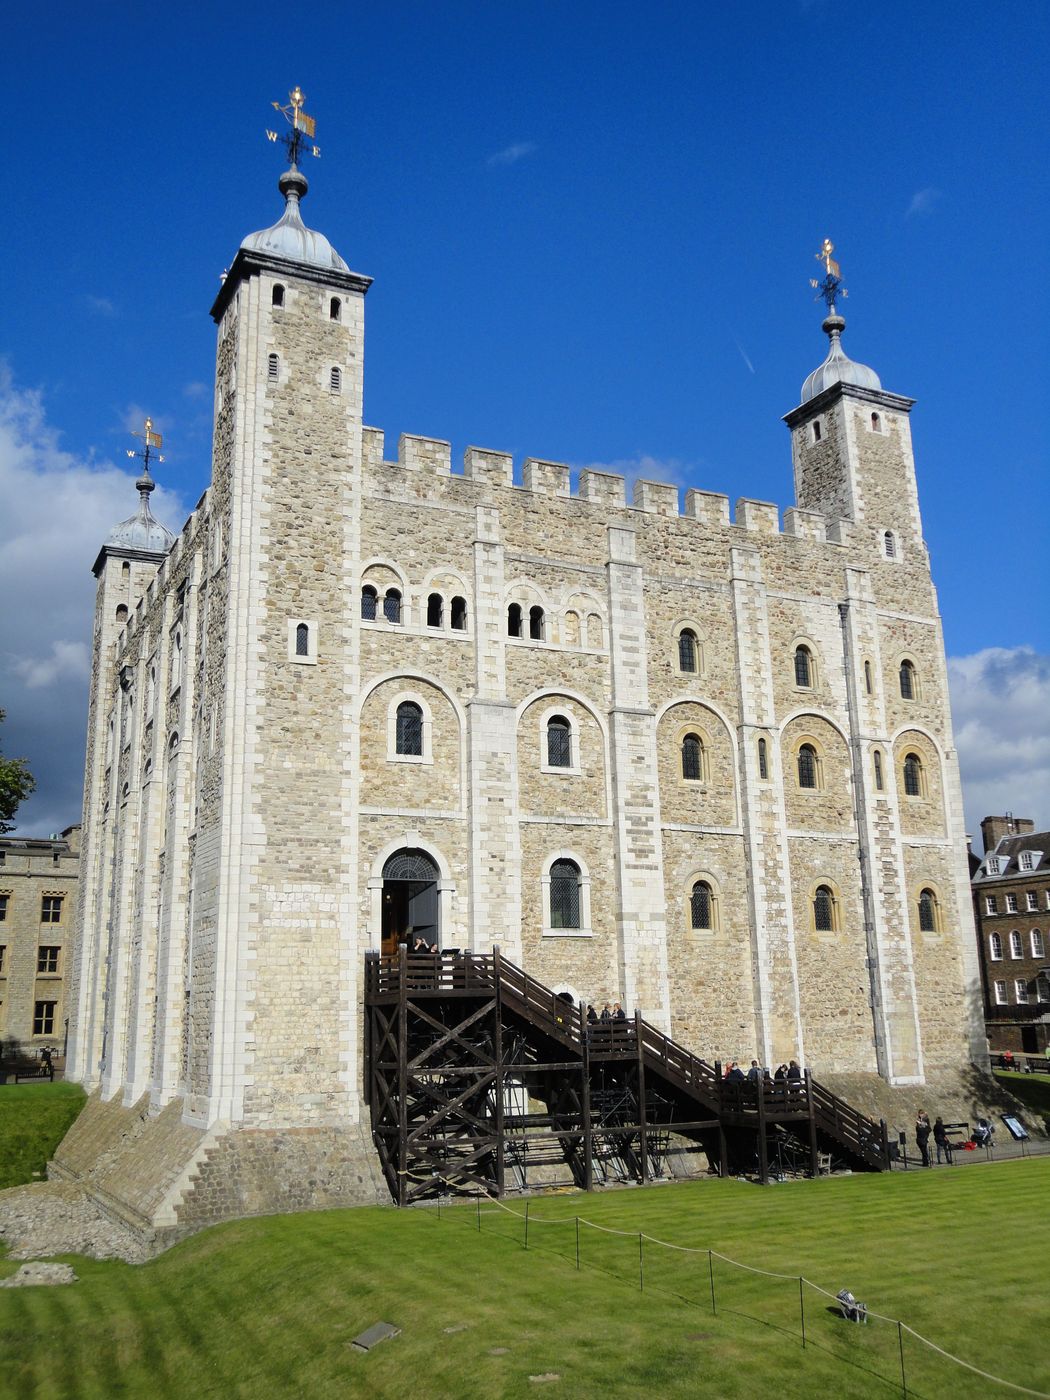 Tower of London (Tour de Londres)